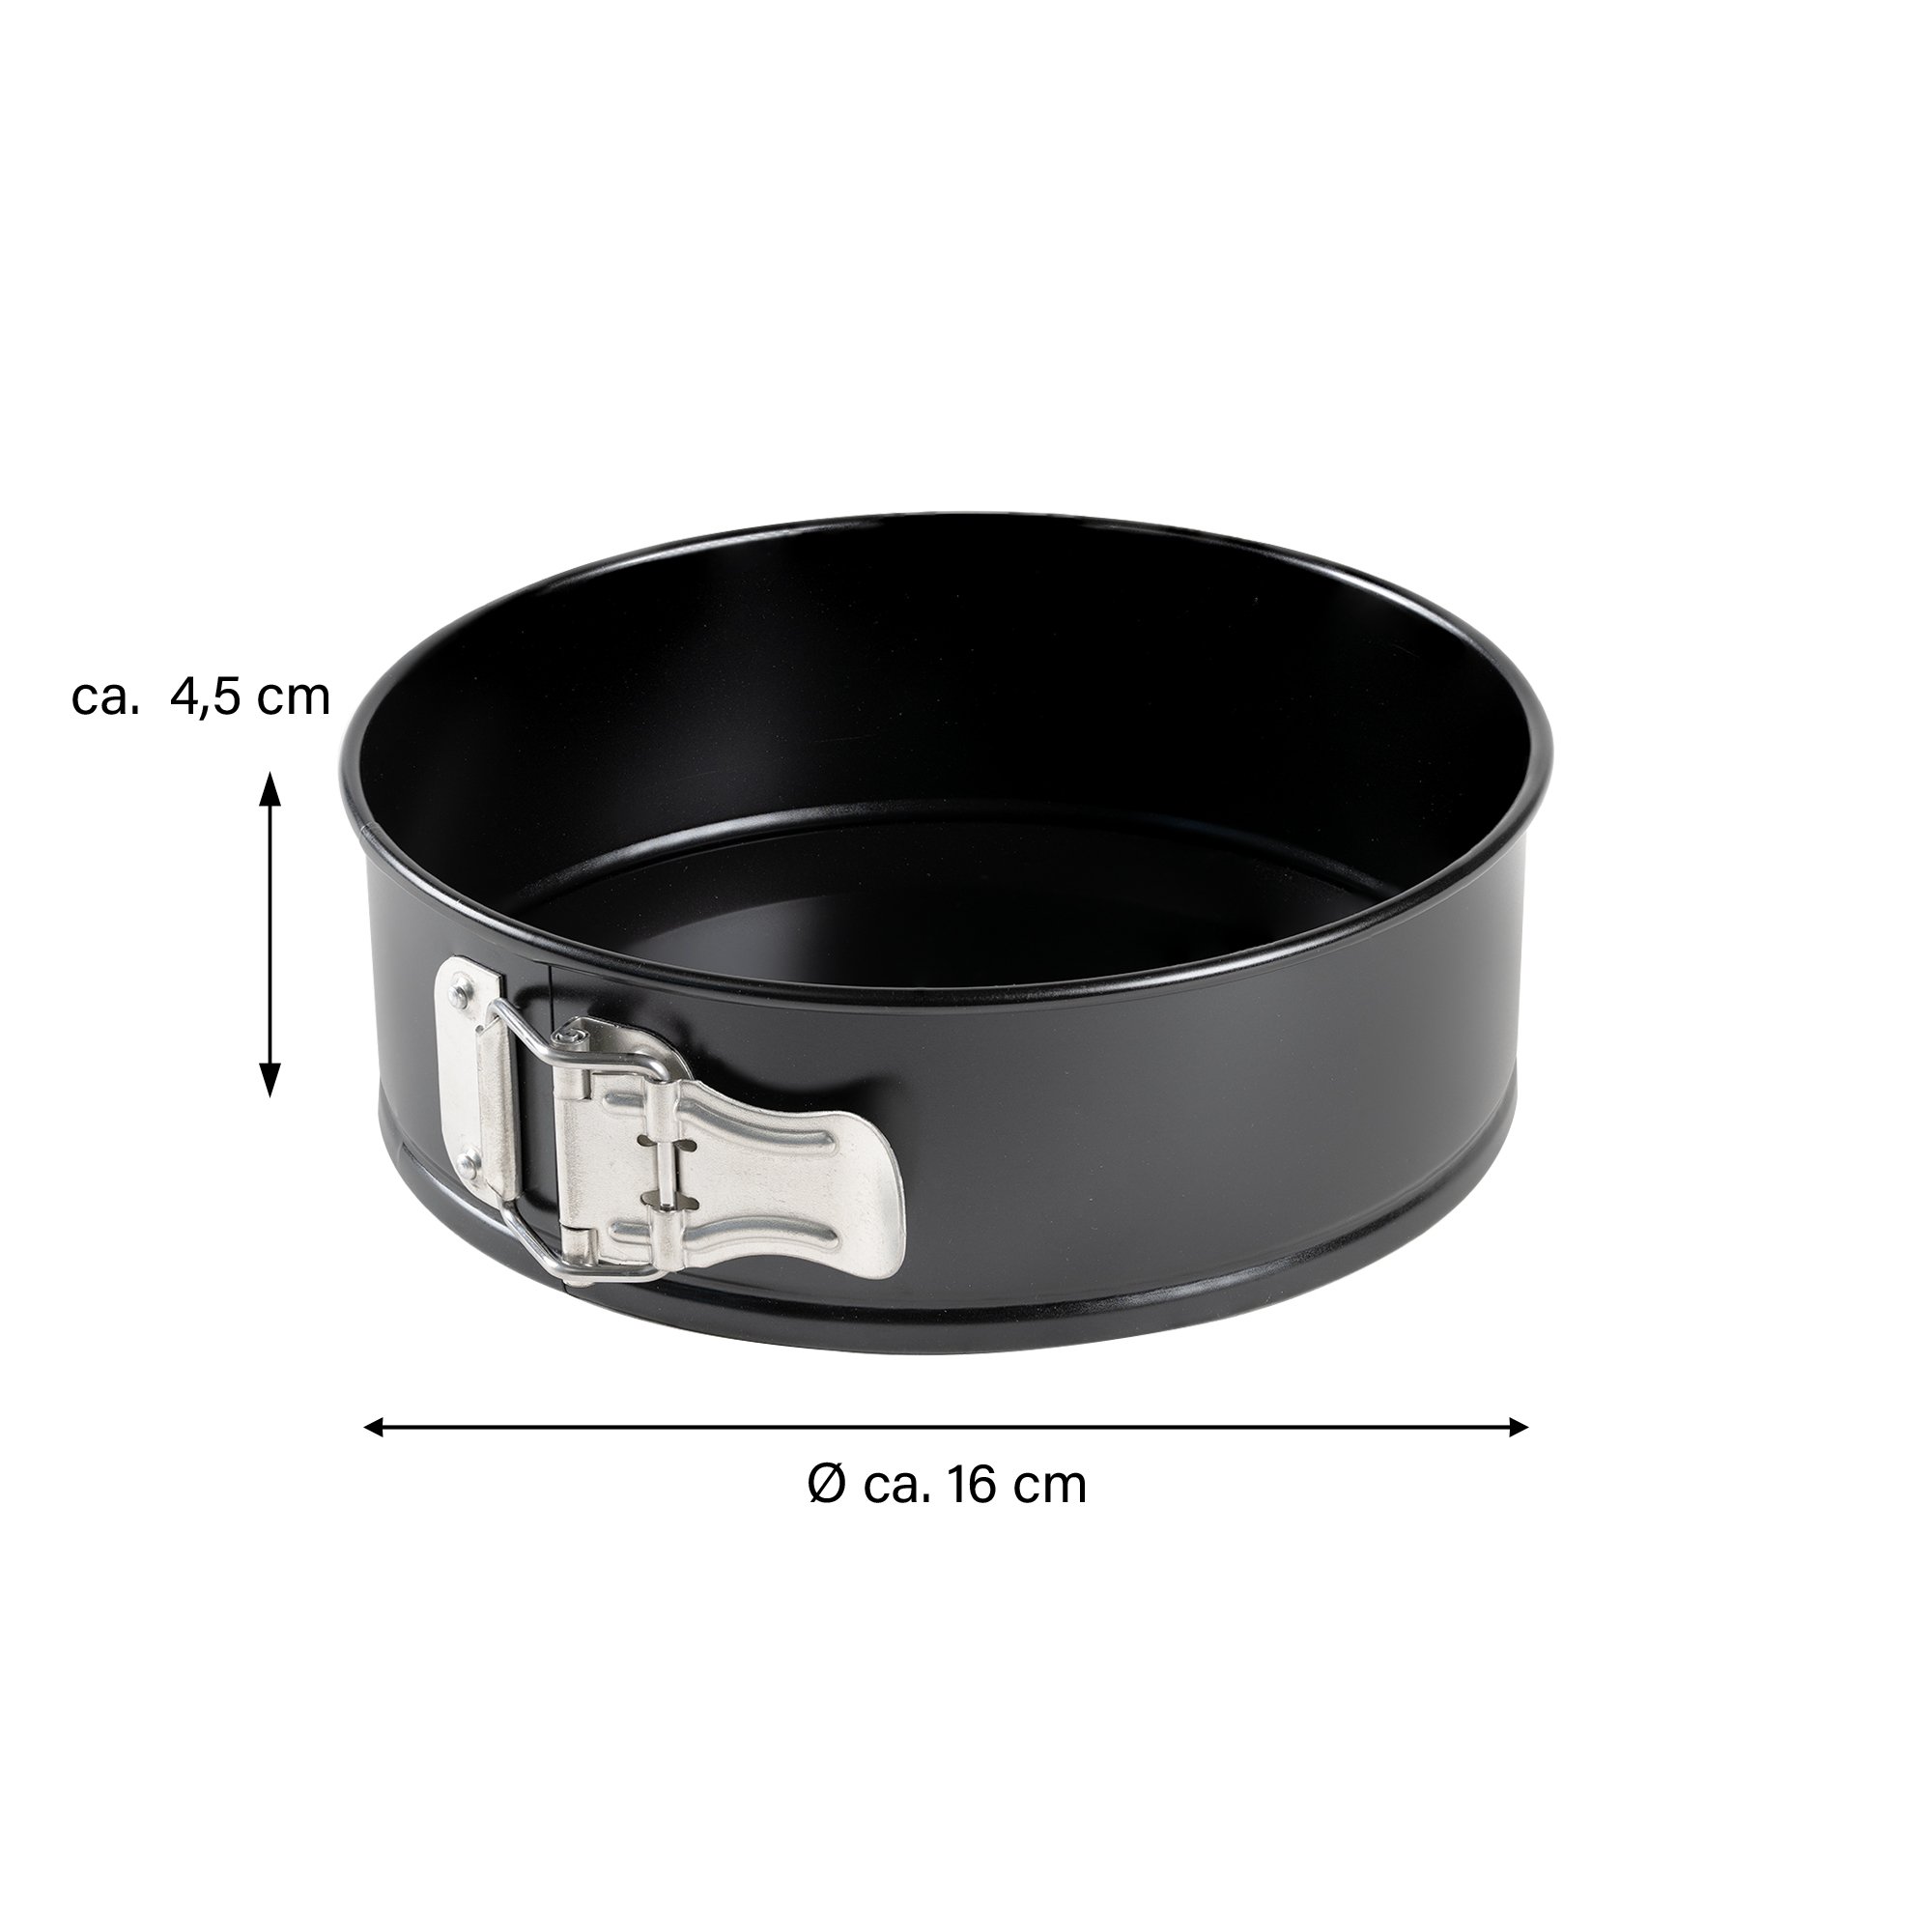 Freyersbacher® Springform Pan 16 cm, Round Cake Tin | Loose Base, Non-Stick